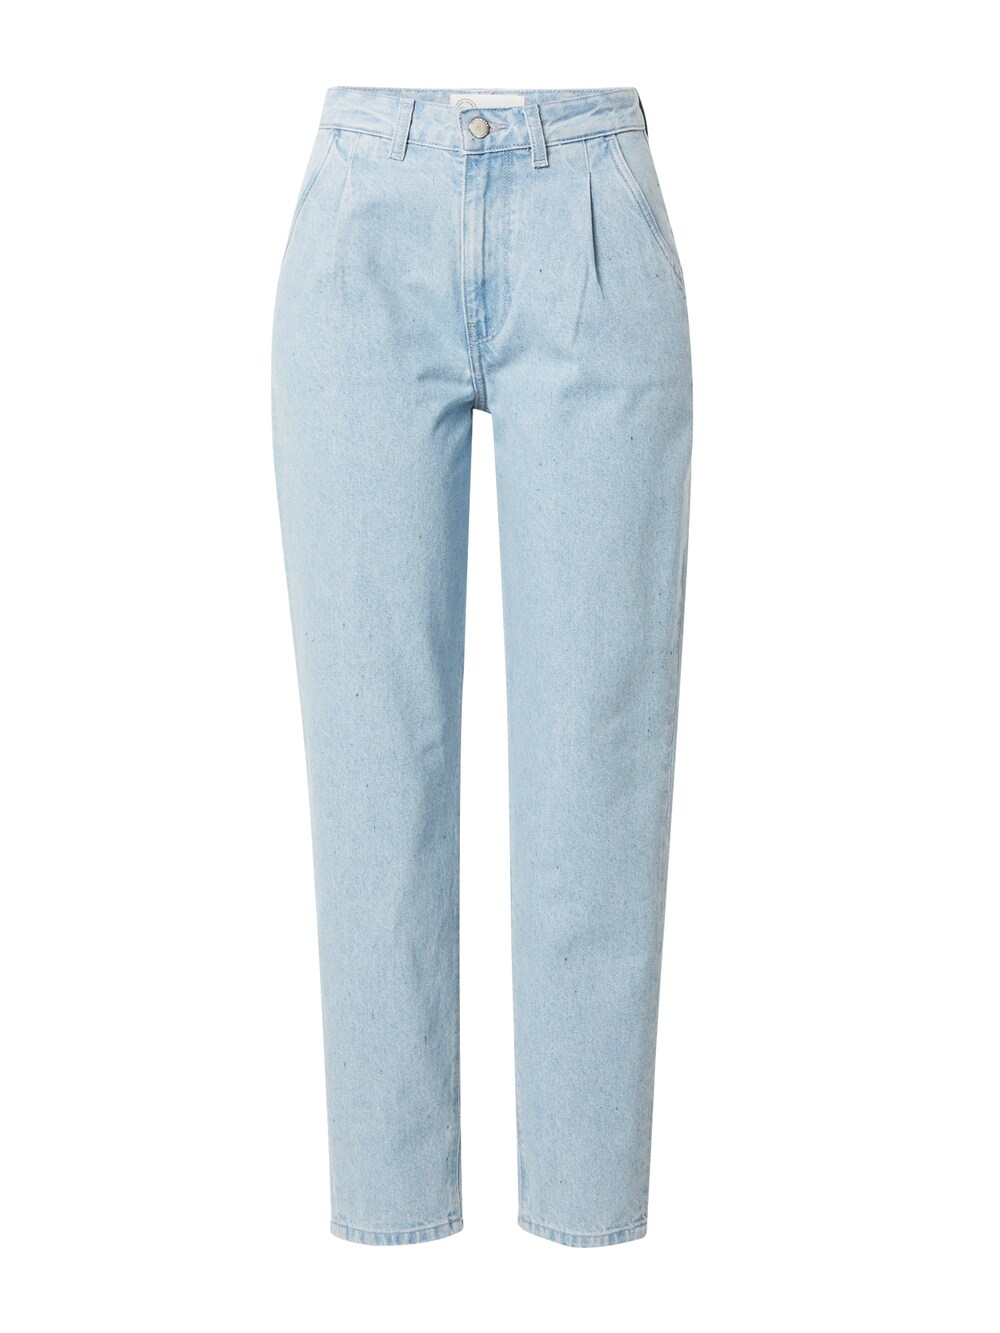 Обычные джинсы Mud Jeans Bailey, светло-синий